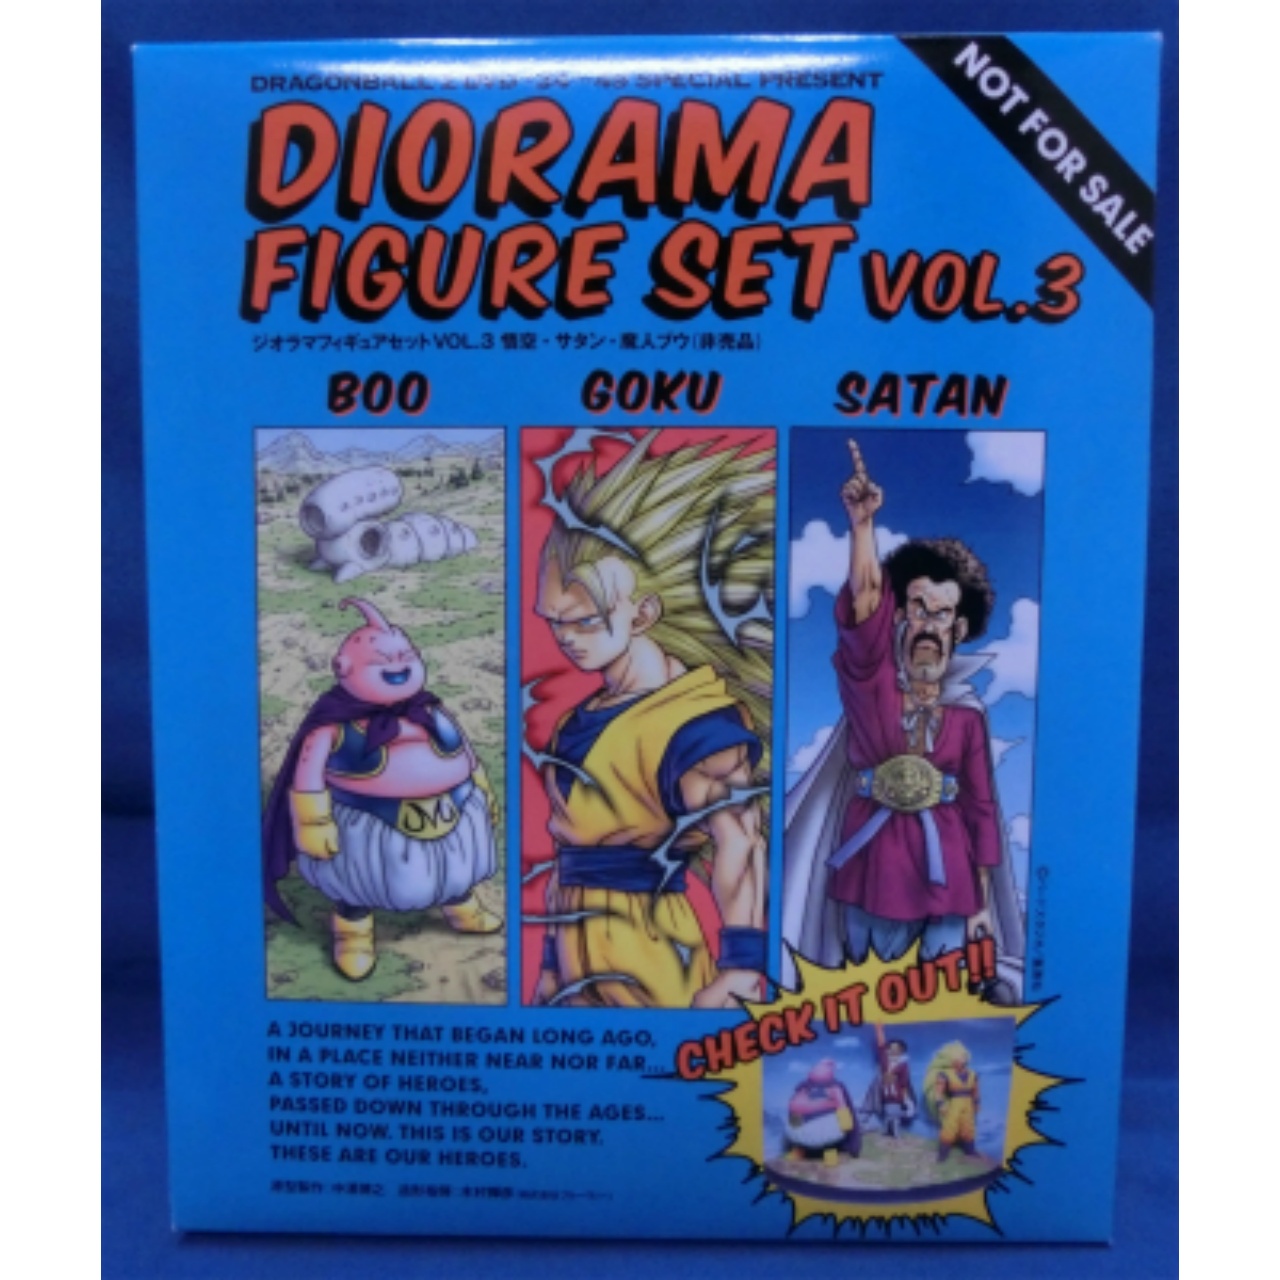 ドラゴンボールZ DVD特典 ジオラマフィギュアセット VOL.3(SS3悟空・サタン・魔人ブウ)